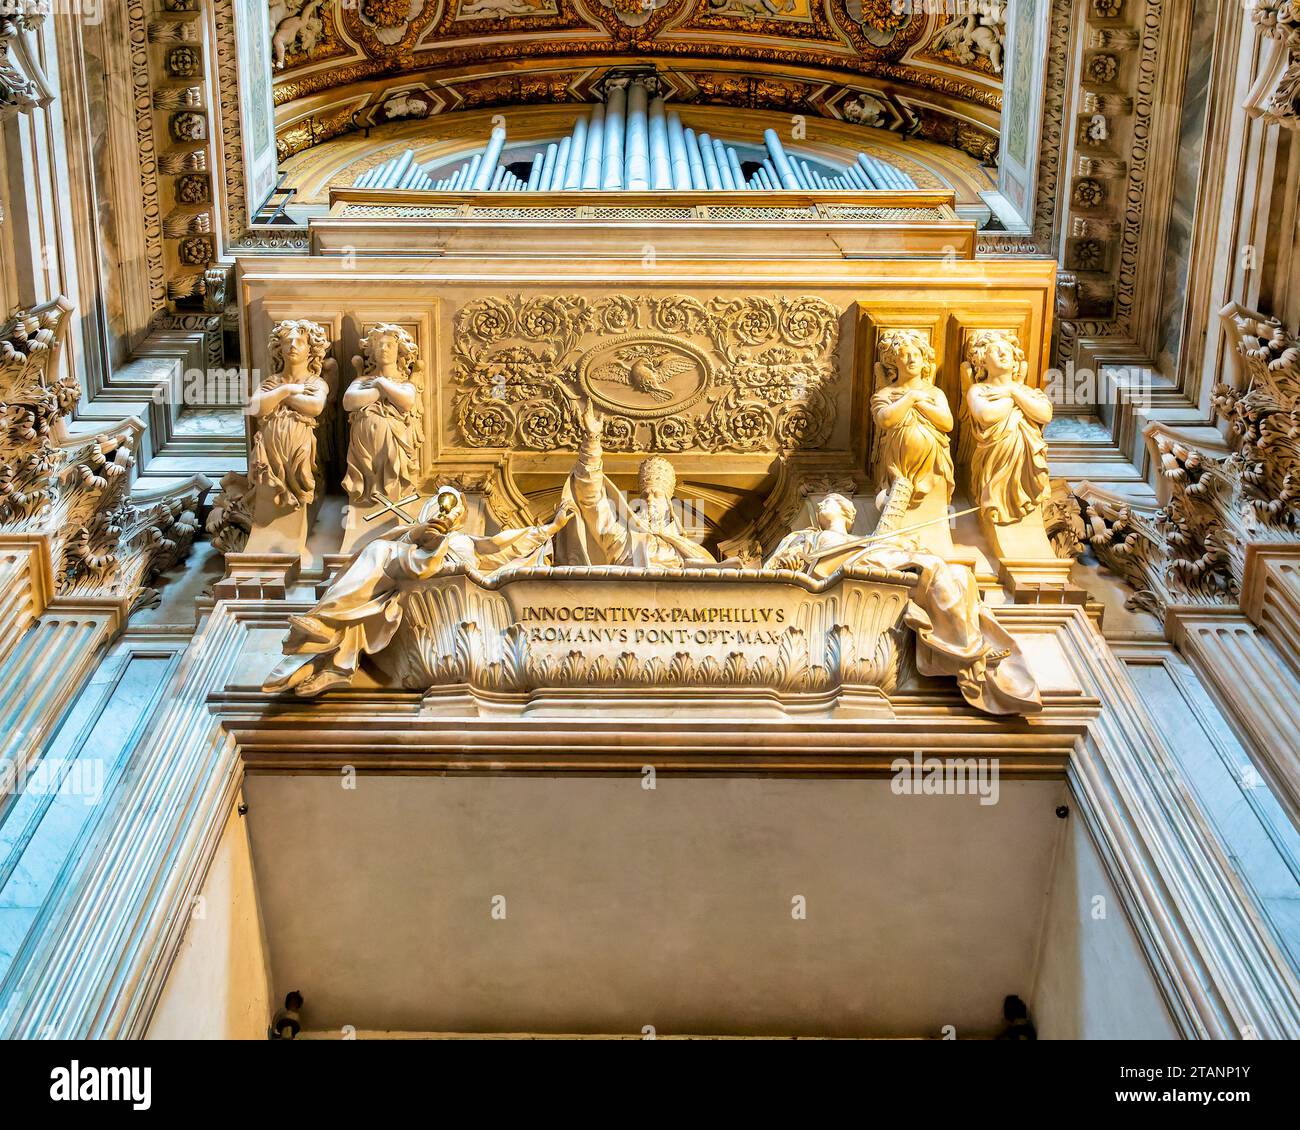 Orgue et tombe du pape Innocent X dans l'église de Sant' Agnese à Agone, Rome, Italie Banque D'Images